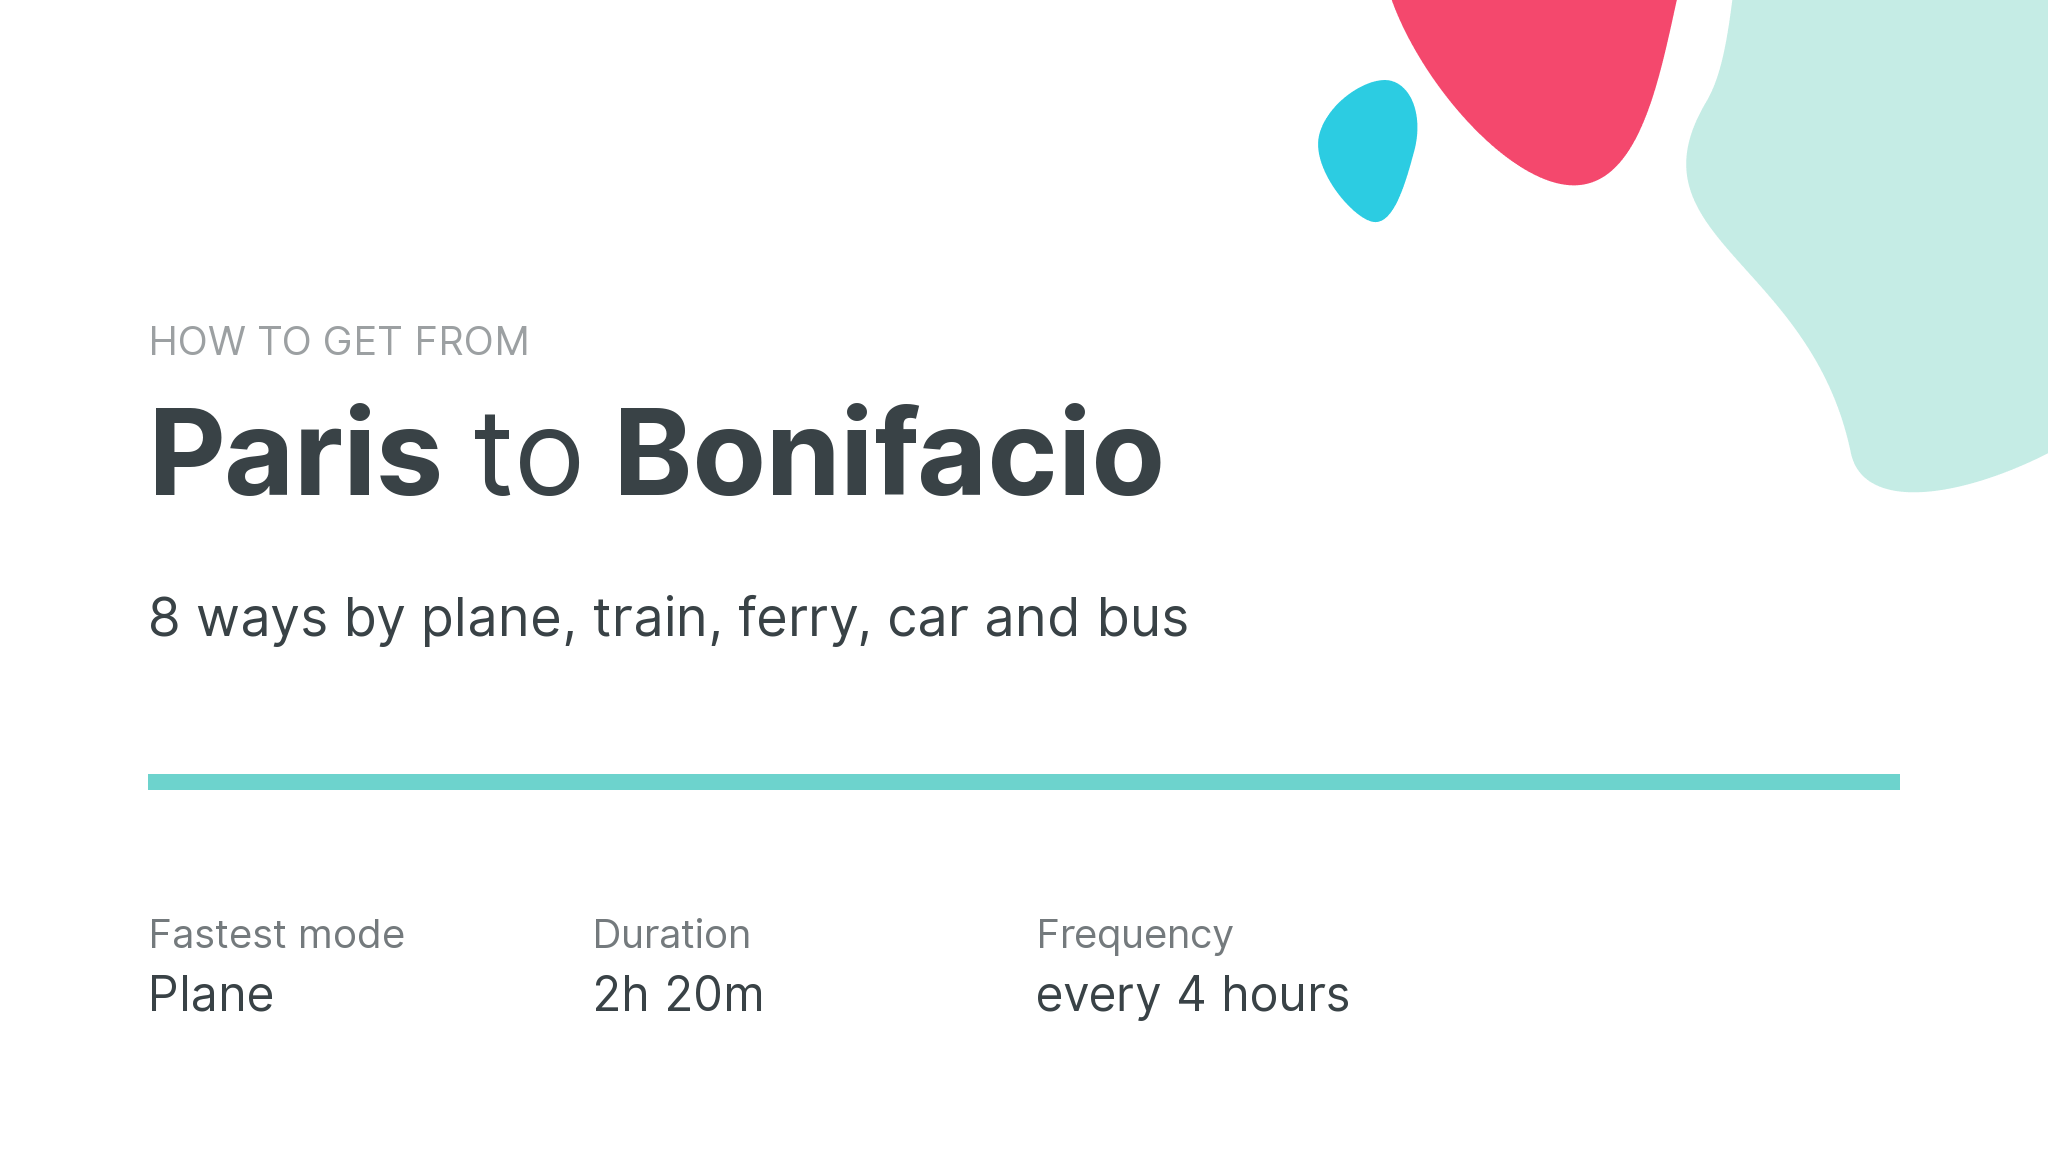 How do I get from Paris to Bonifacio